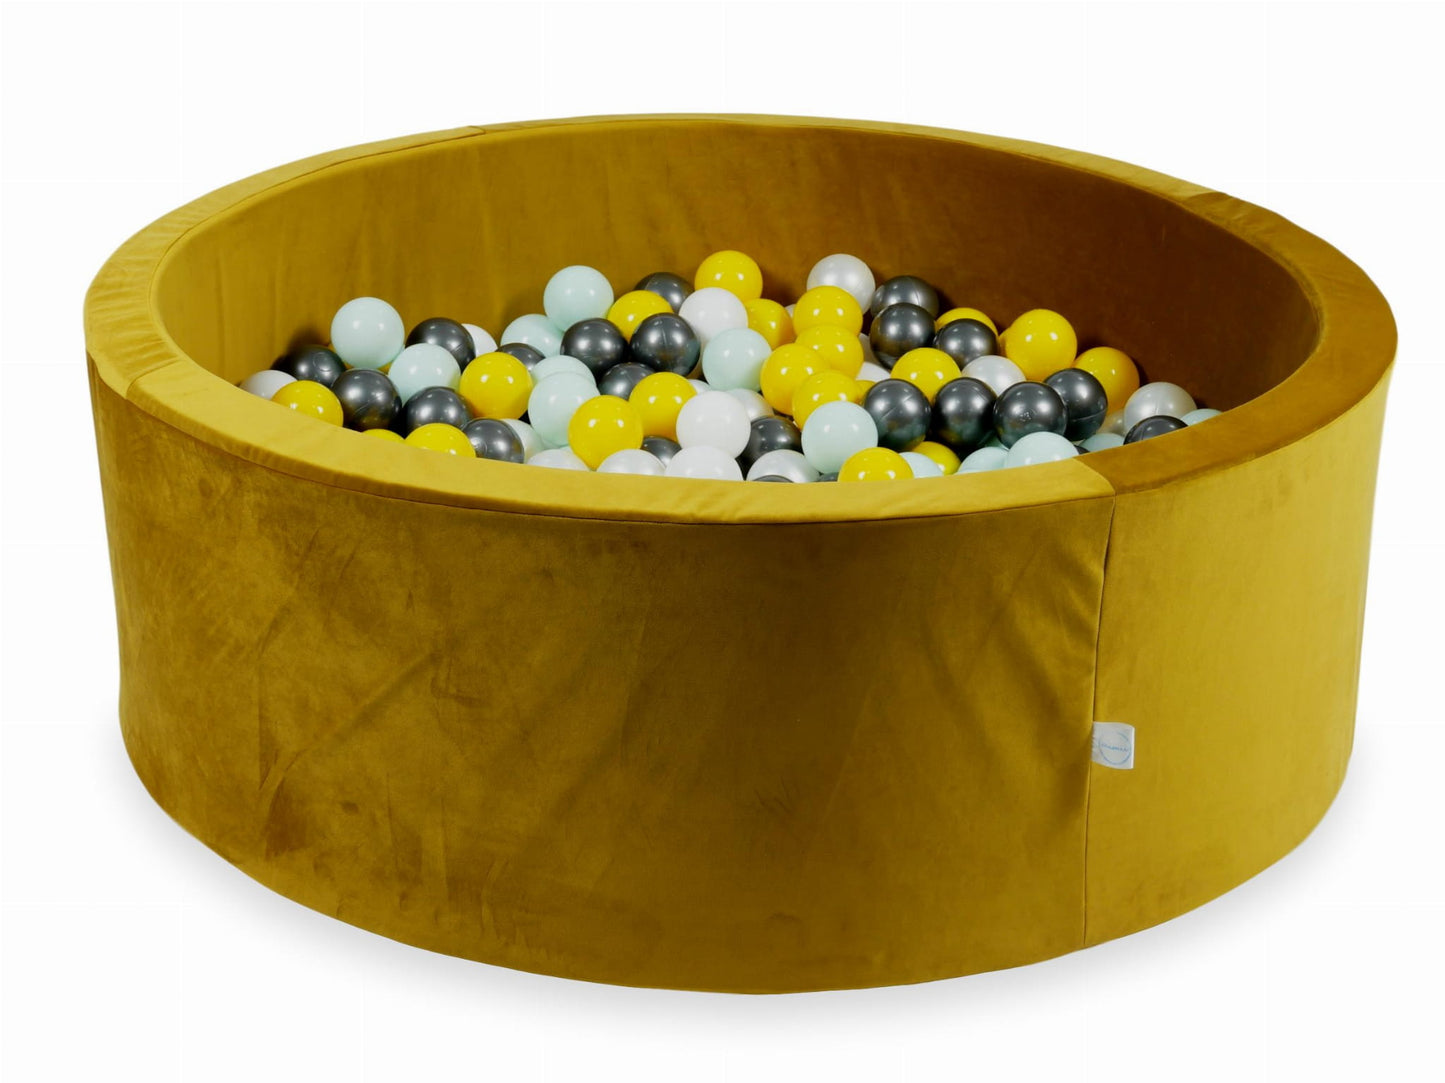 Piscine à Balles 110x40 Velvet or avec balles 500 pcs (jaune, menthe claire, graphite métallique, blanc, perle)